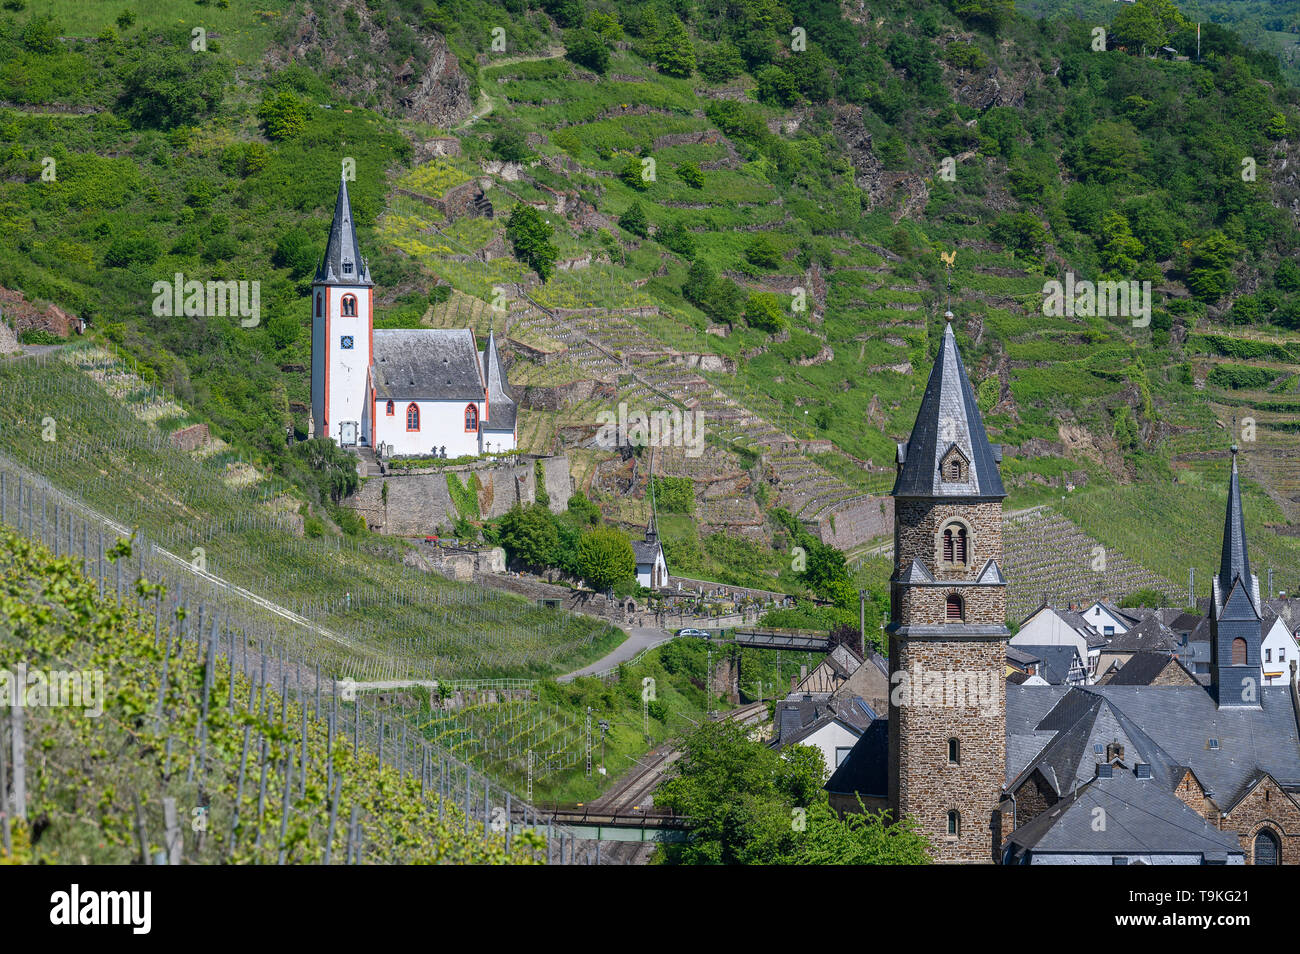 Églises romanes et de vignobles à Hatzenport, vallée de la Moselle, Allemagne Banque D'Images